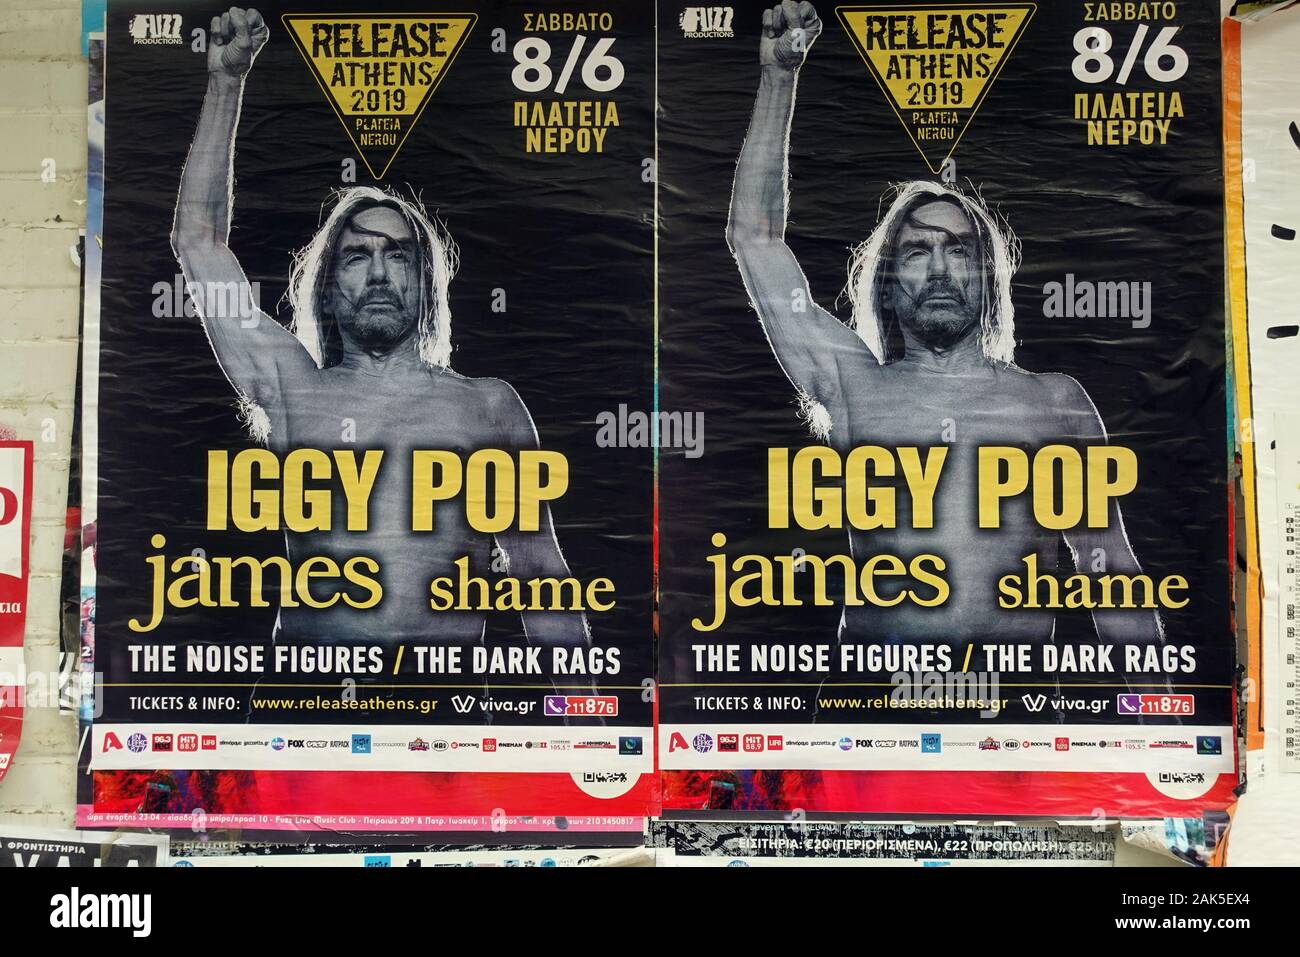 Athen, Griechenland - 20. MAI 2019: Iggy Pop Rock Music Live Konzert Plakate auf schmutzige Wand. Stockfoto